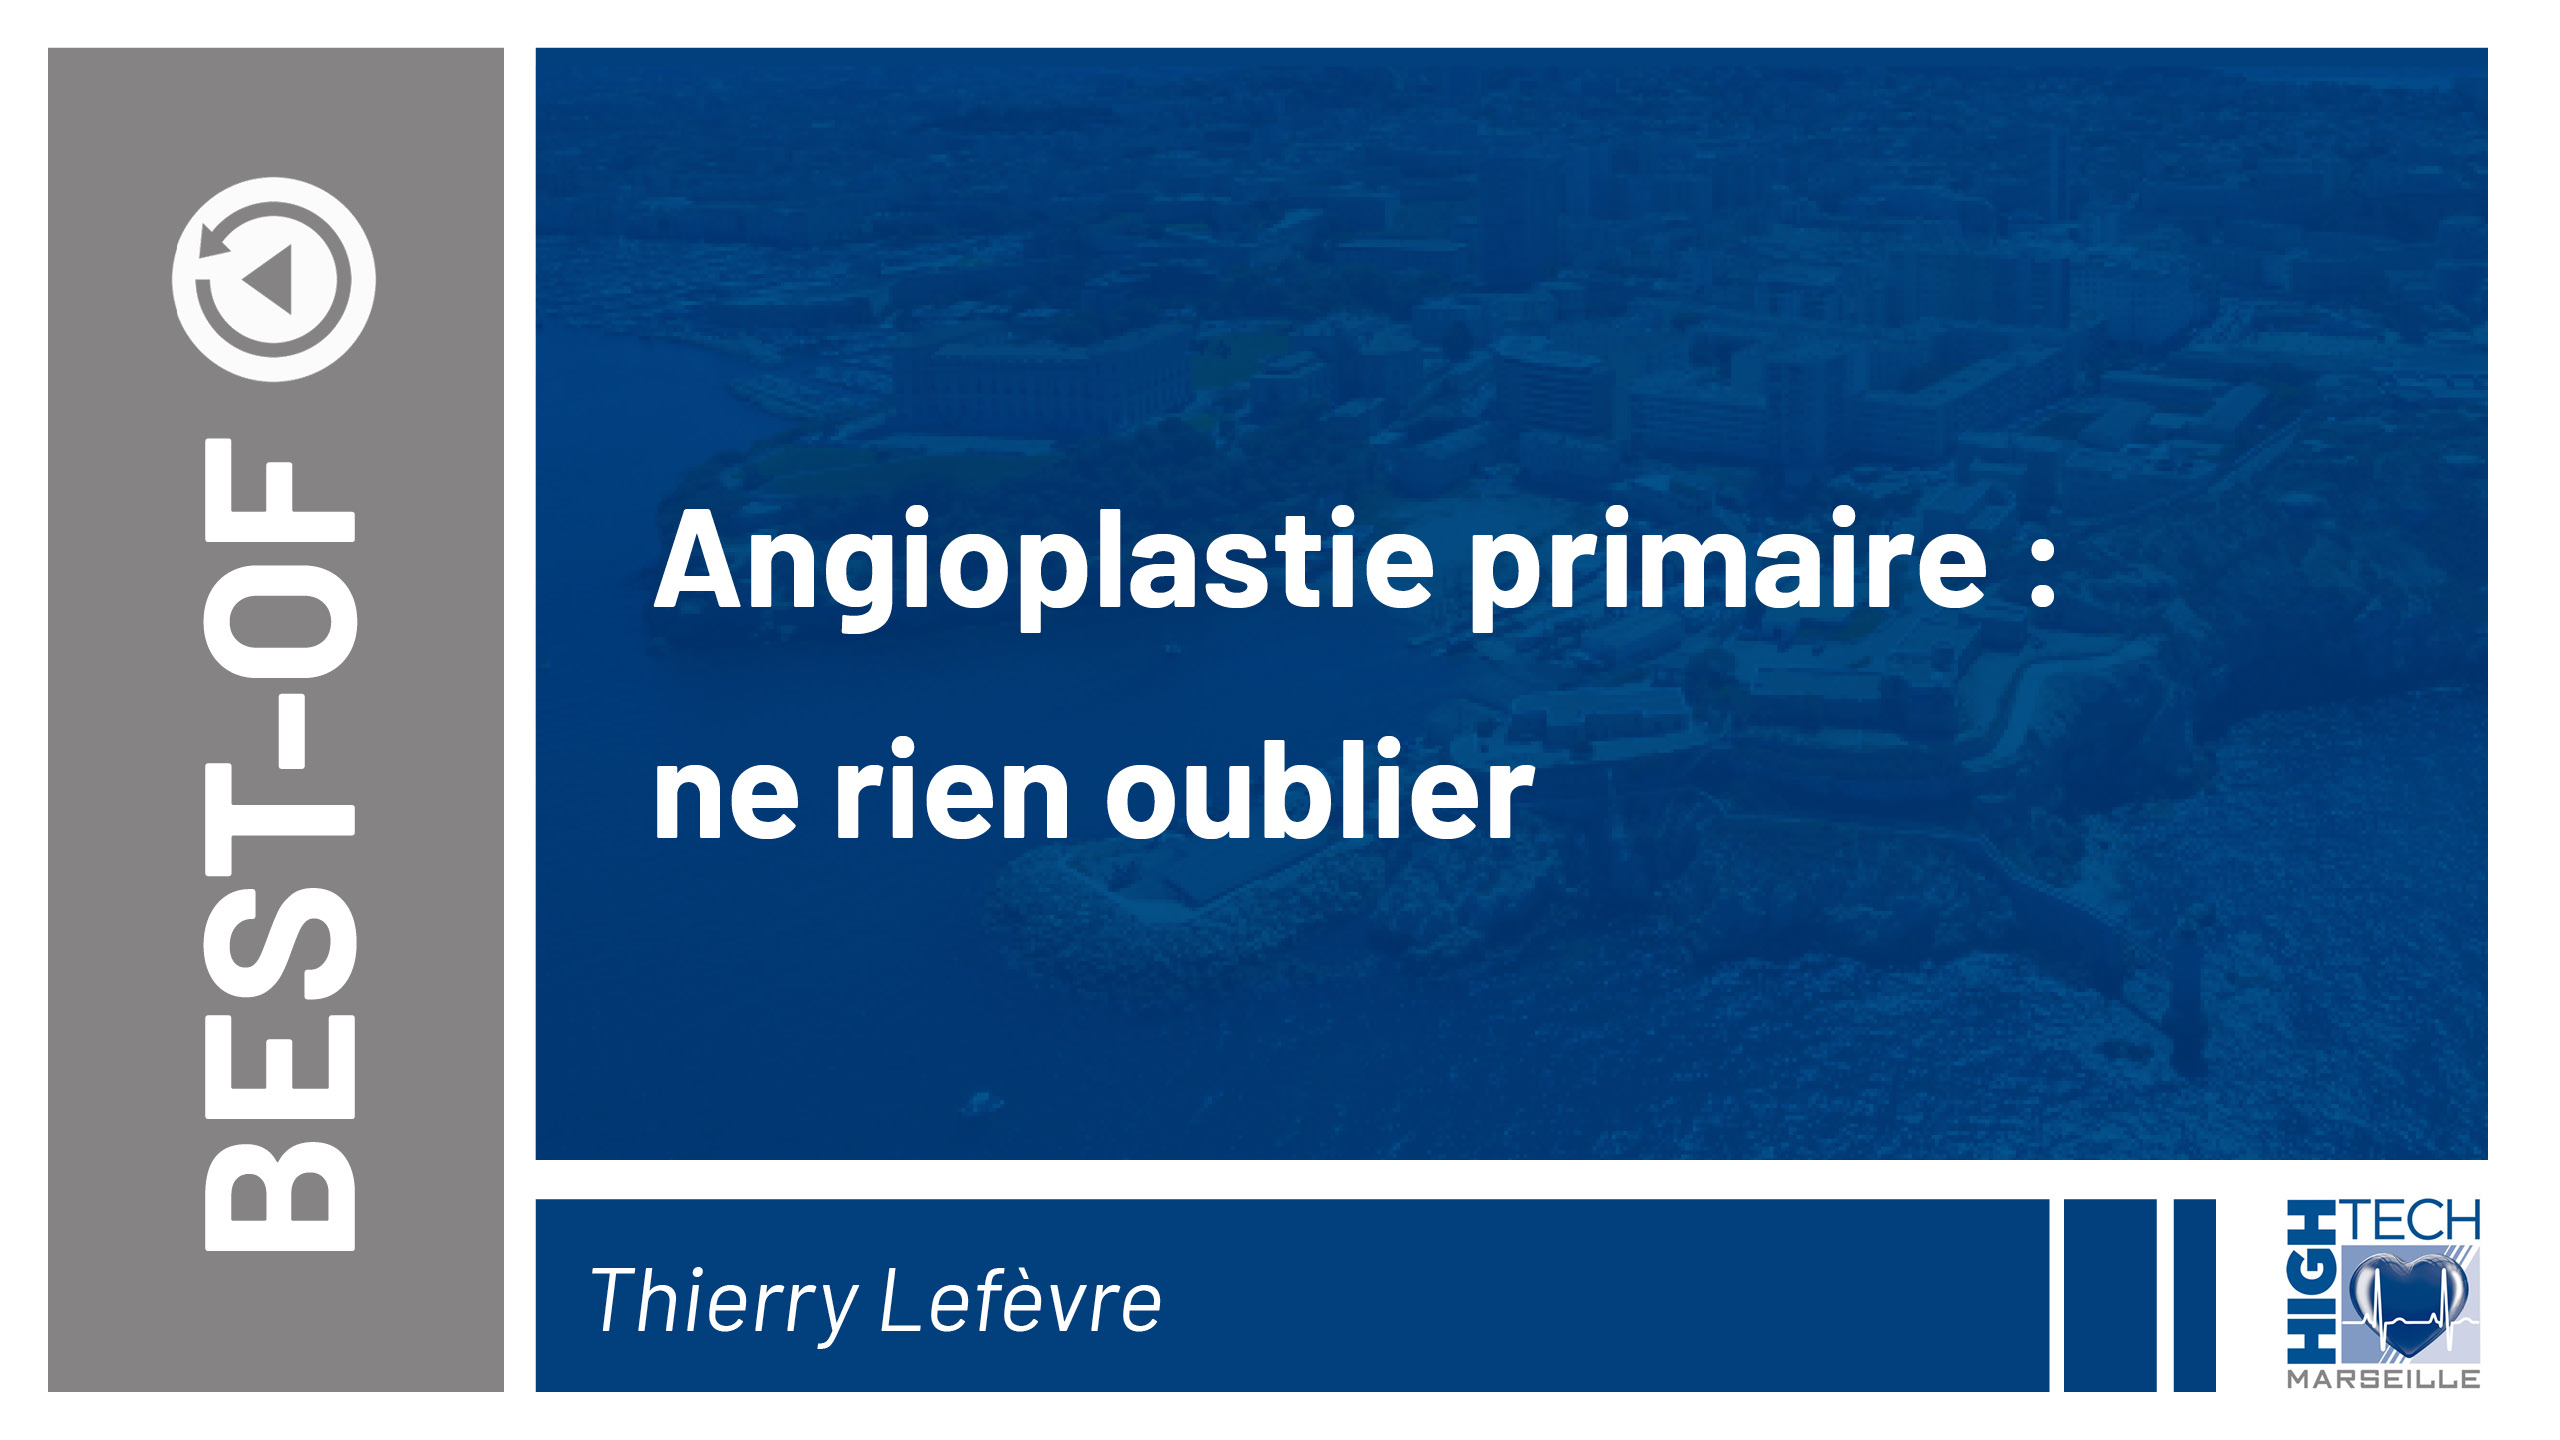 Angioplastie primaire : ne rien oublier – Thierry Lefèvre